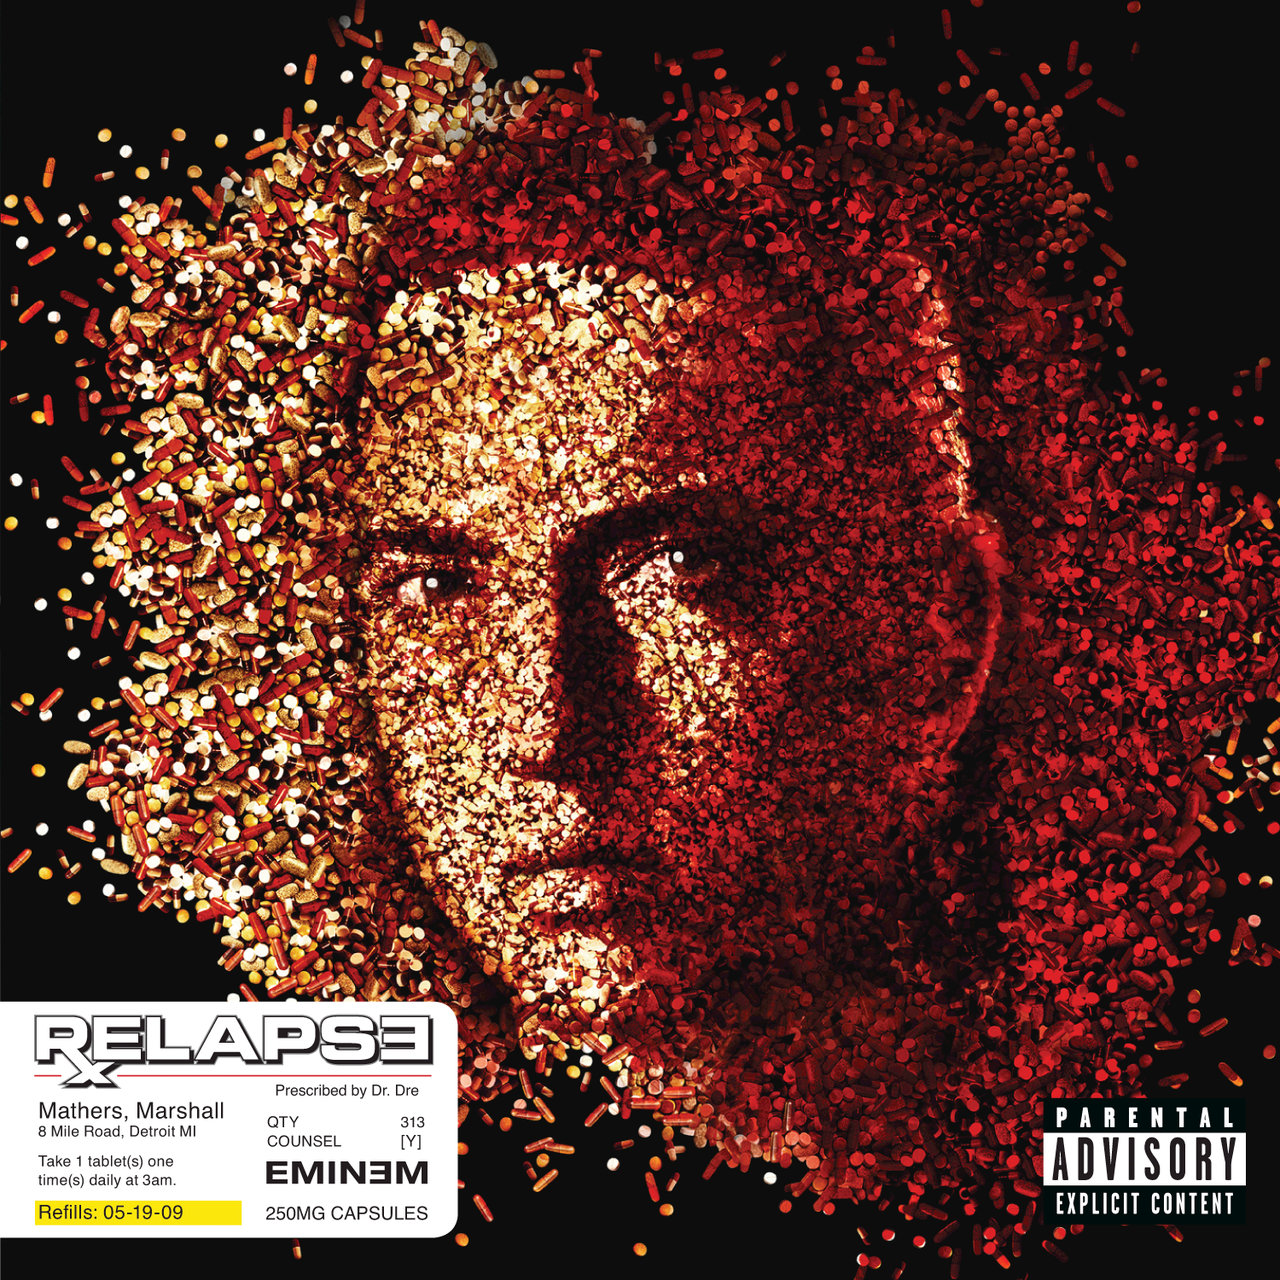 Eminem - Relapse (Cover)